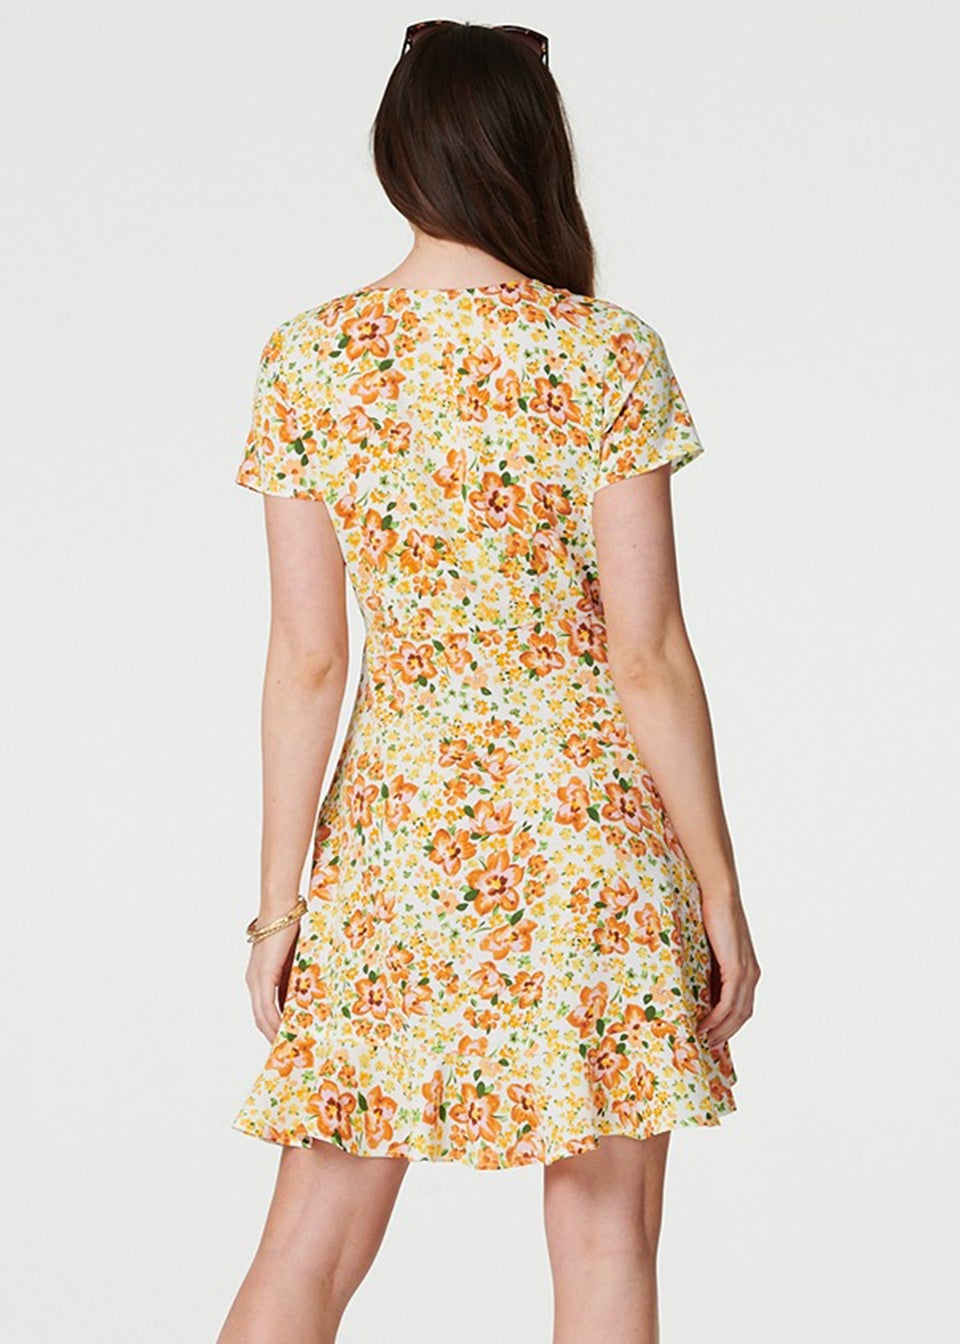 Izabel London Yellow Floral Print Ruffle Wrap Dress